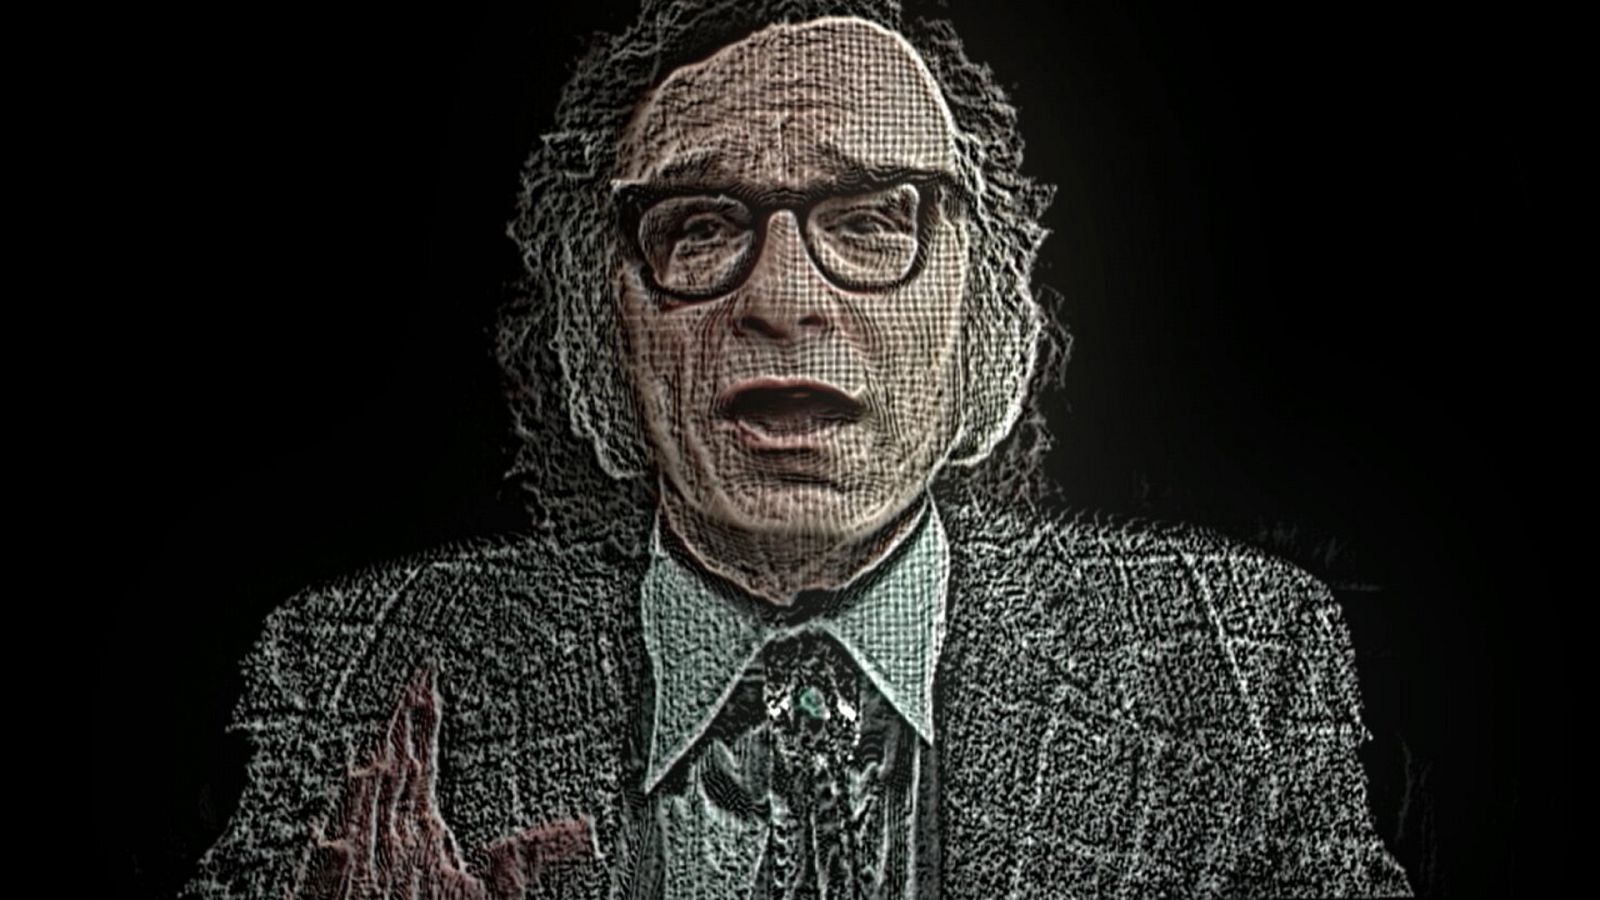 La noche temática - Isaac Asimov, mensaje al futuro - Documental en RTVE